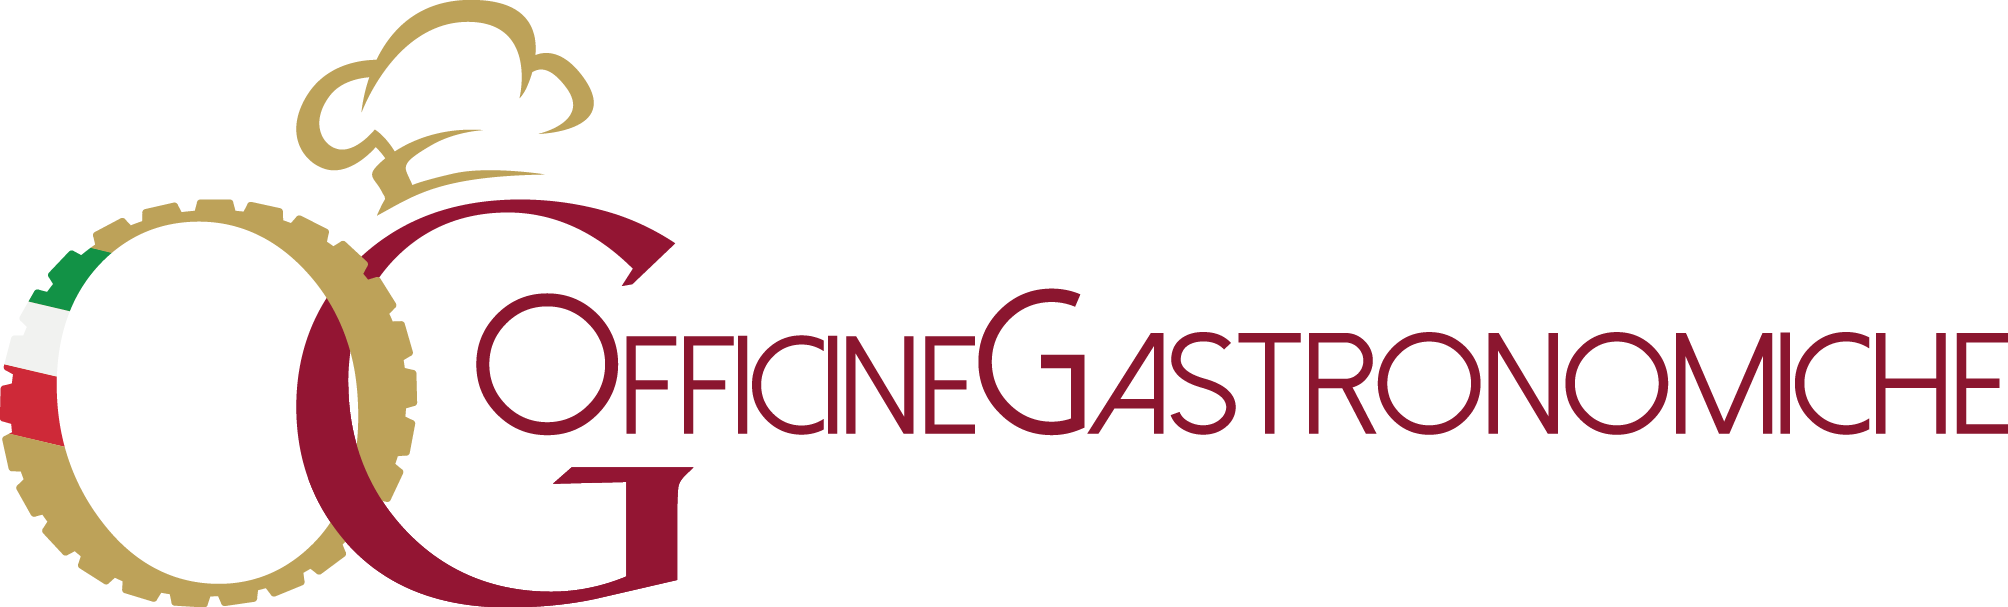 Logo Officine Gastronomiche